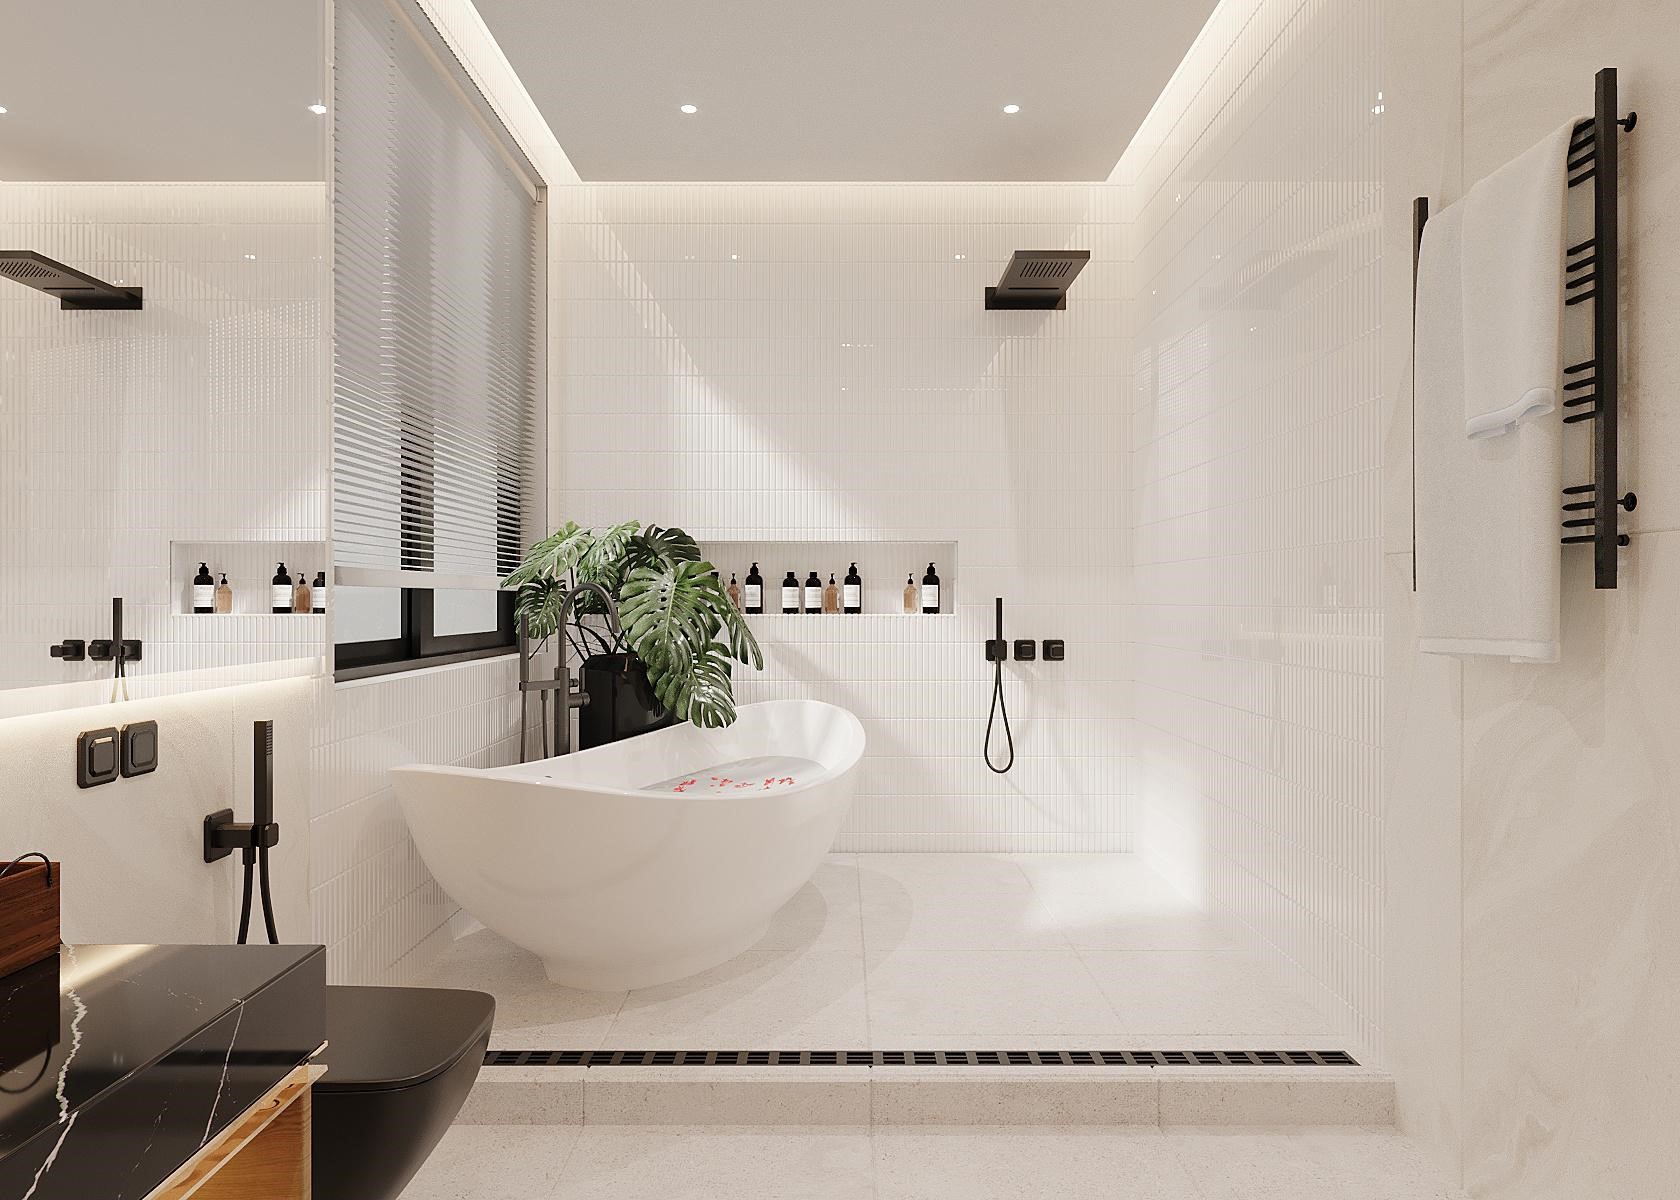 Trang trí nội thất phòng tắm biệt thự bằng bồn tắm kết hợp vòi sen hiện đại